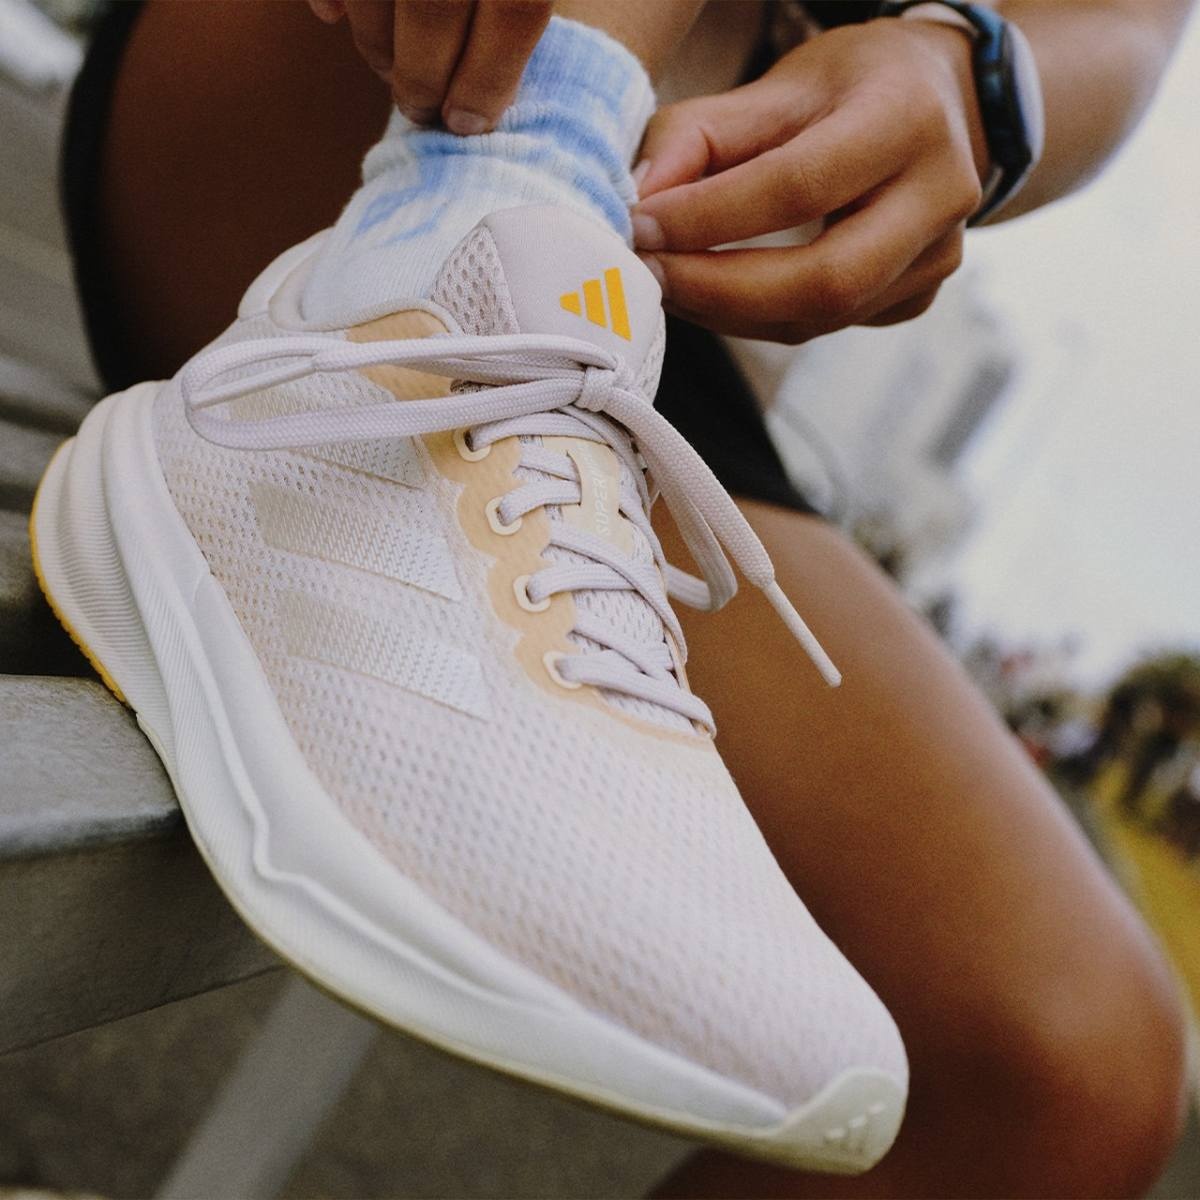 Adidas vuole avvicinarsi al runner più popolare con queste 3 nuove scarpe della linea Supernova